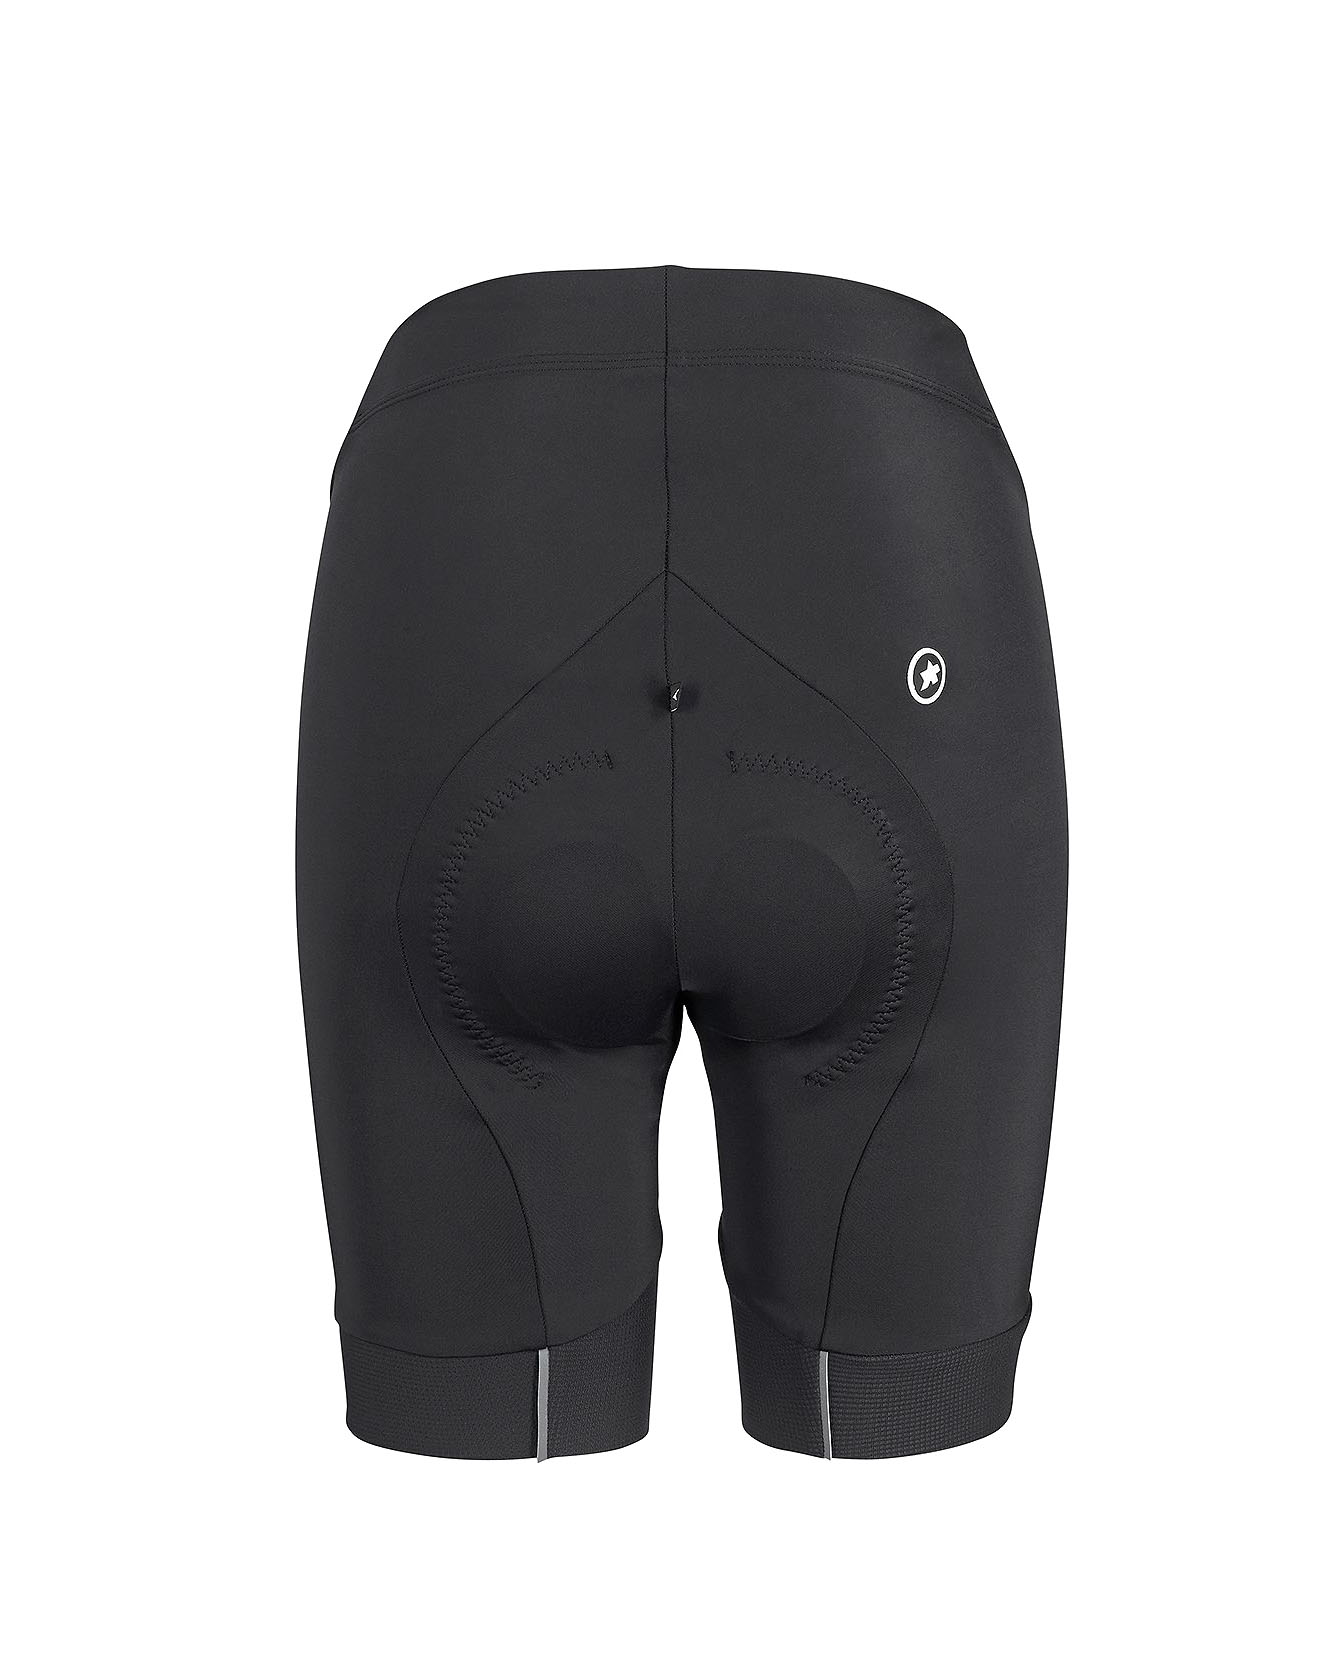 Велотрусы ASSOS Uma GT Half Shorts Evo, женские, черные с белым логотипом, XS фото 2